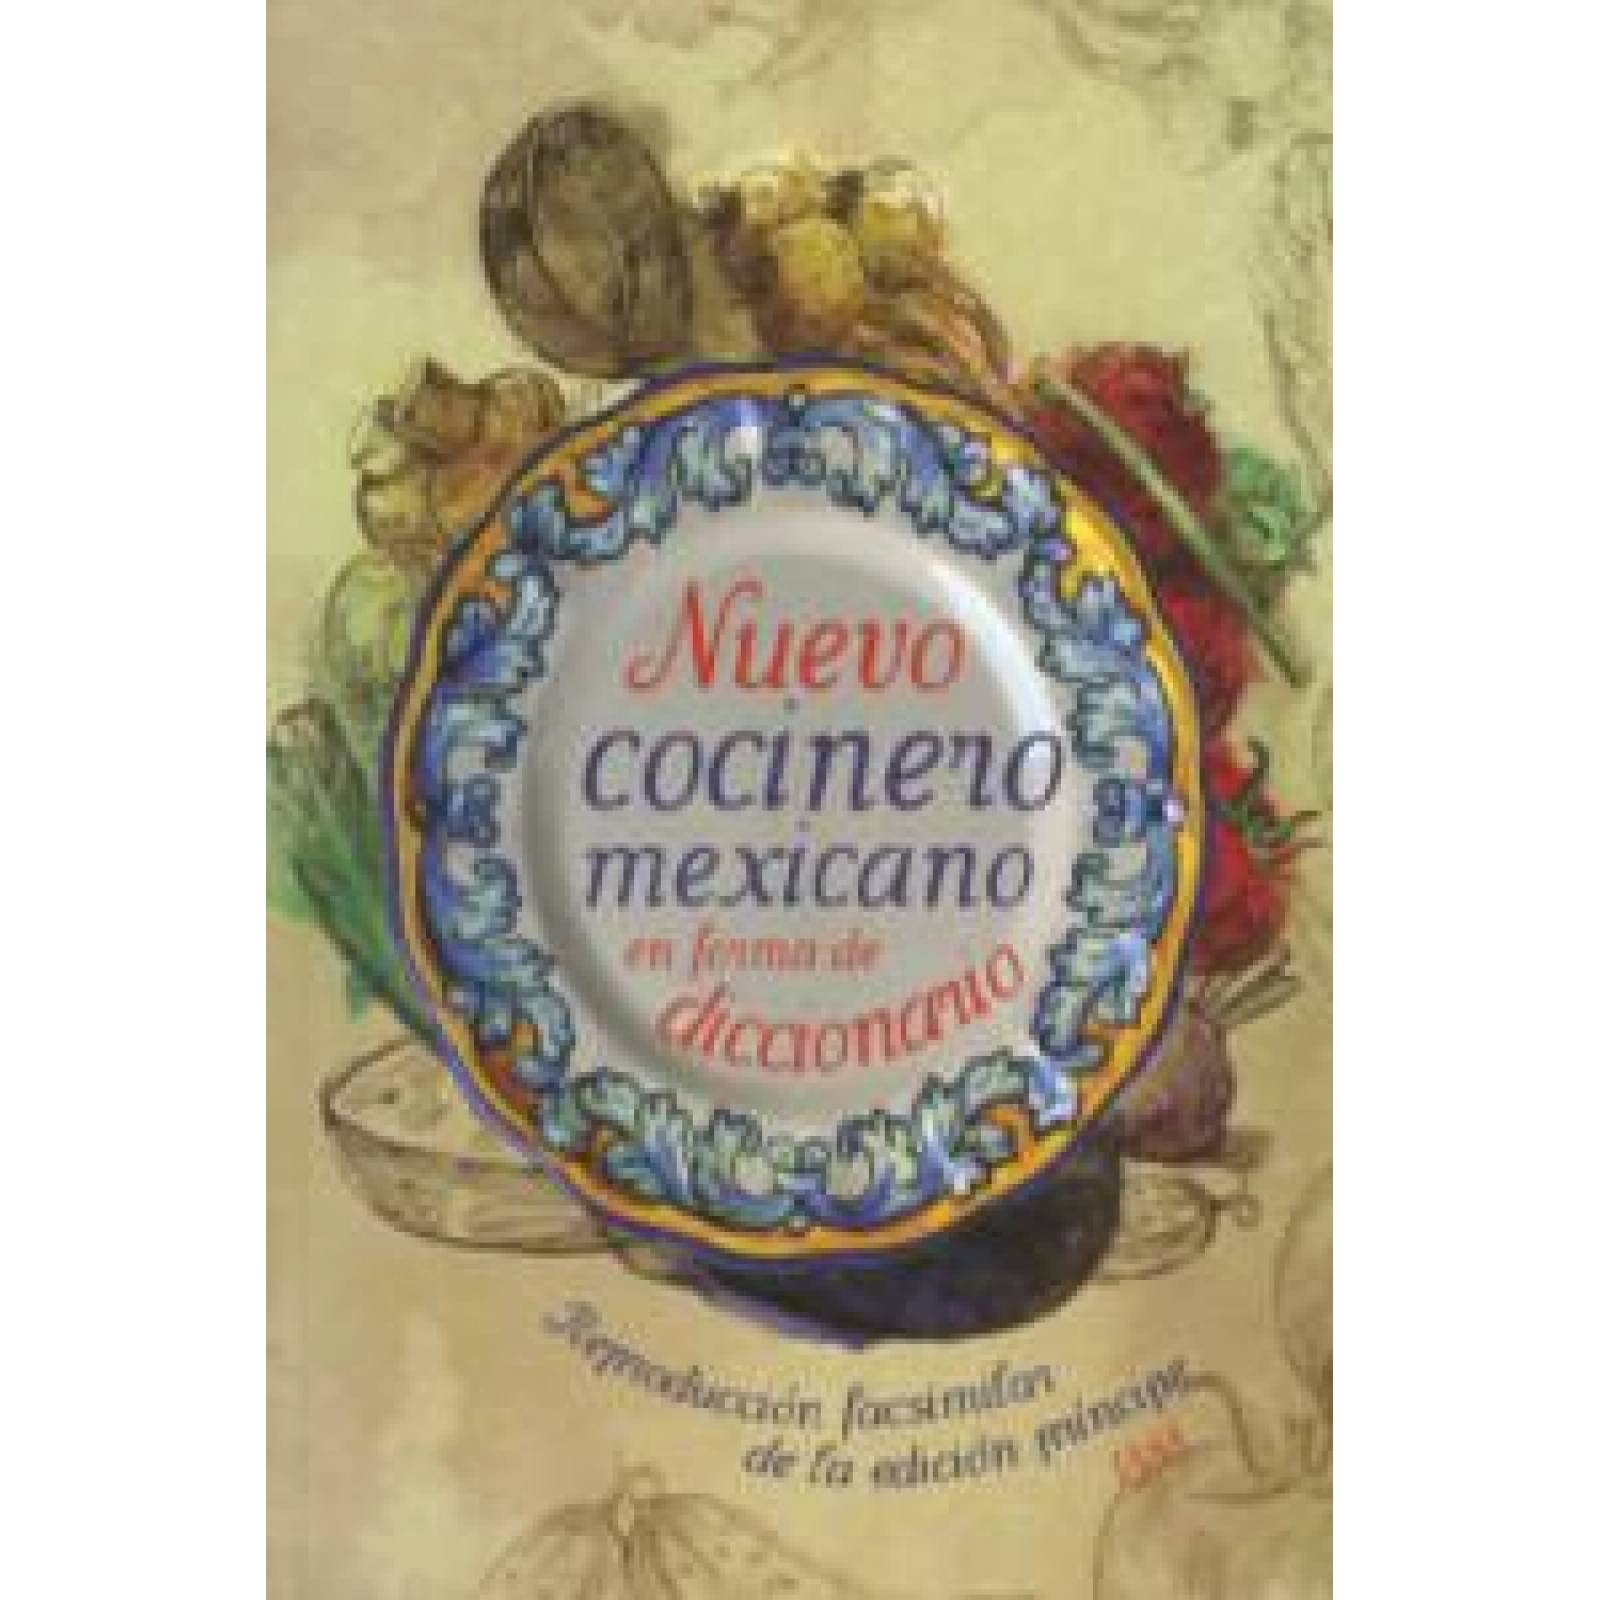 Nuevo cocinero mexicano en forma de diccionario 